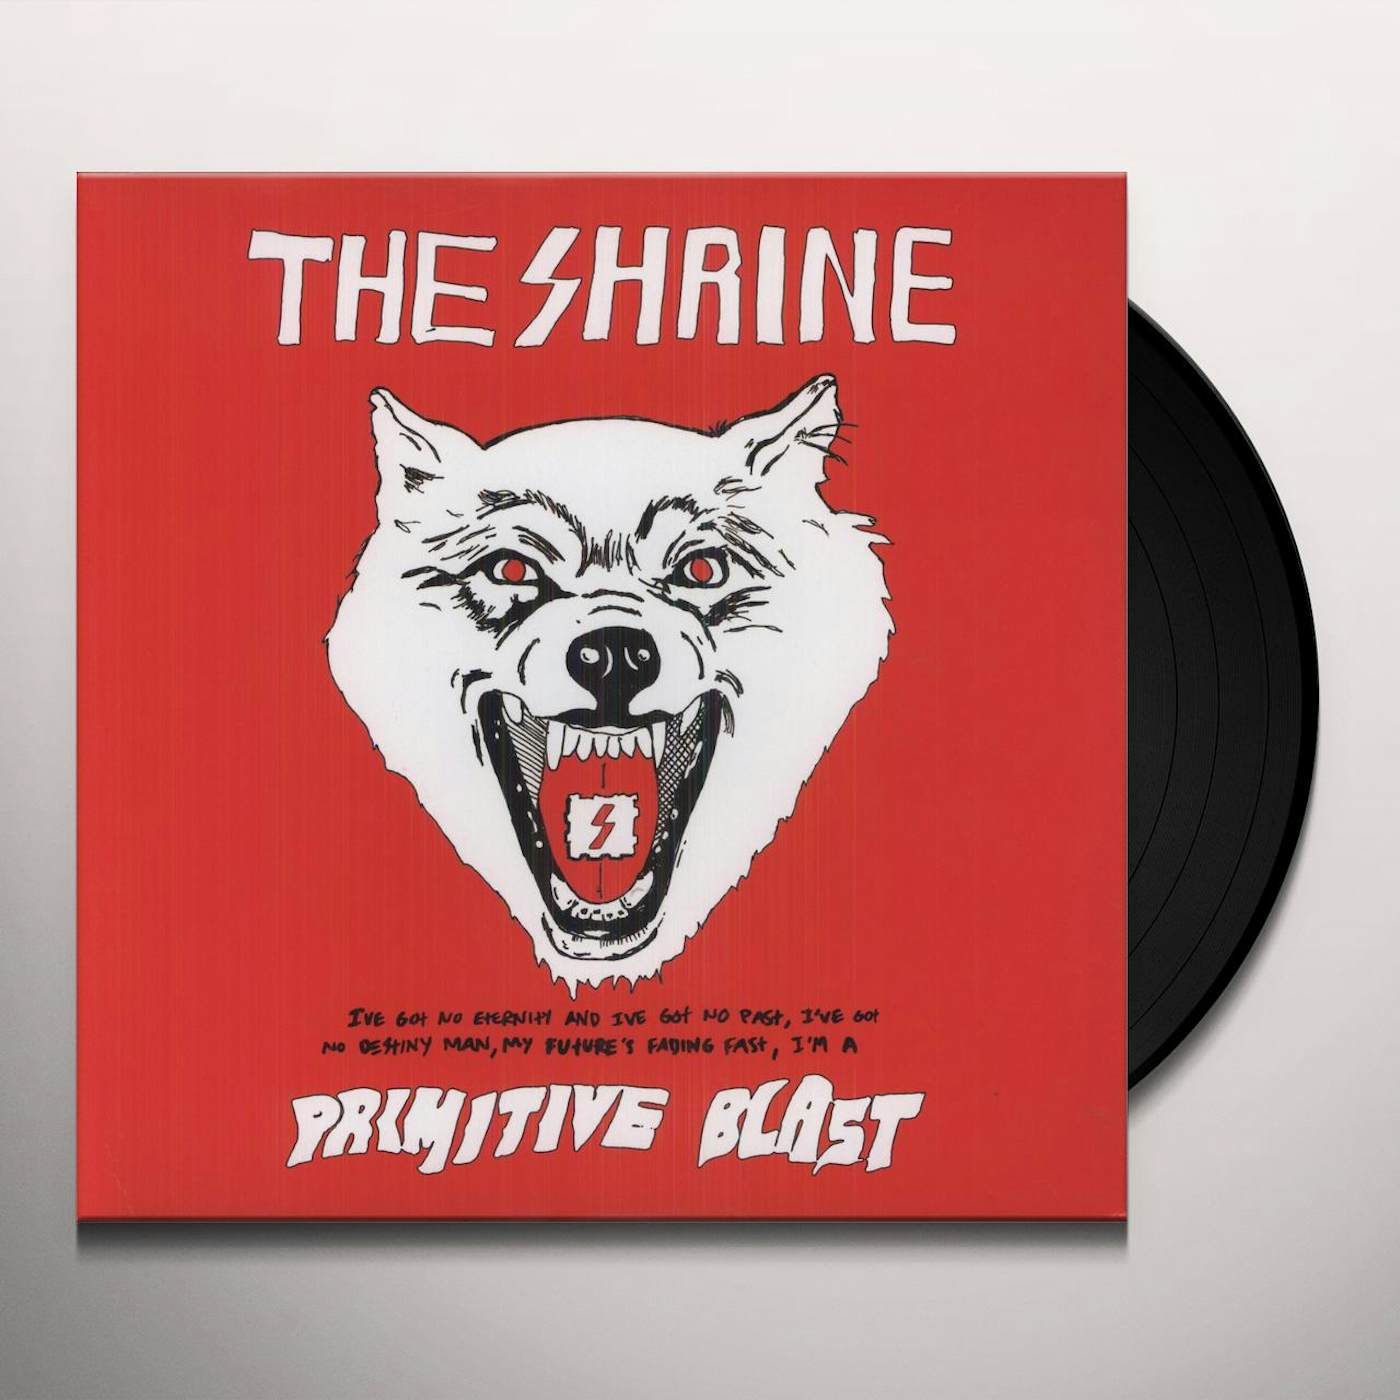 The Shrine Primitive Blast Vinyl Record